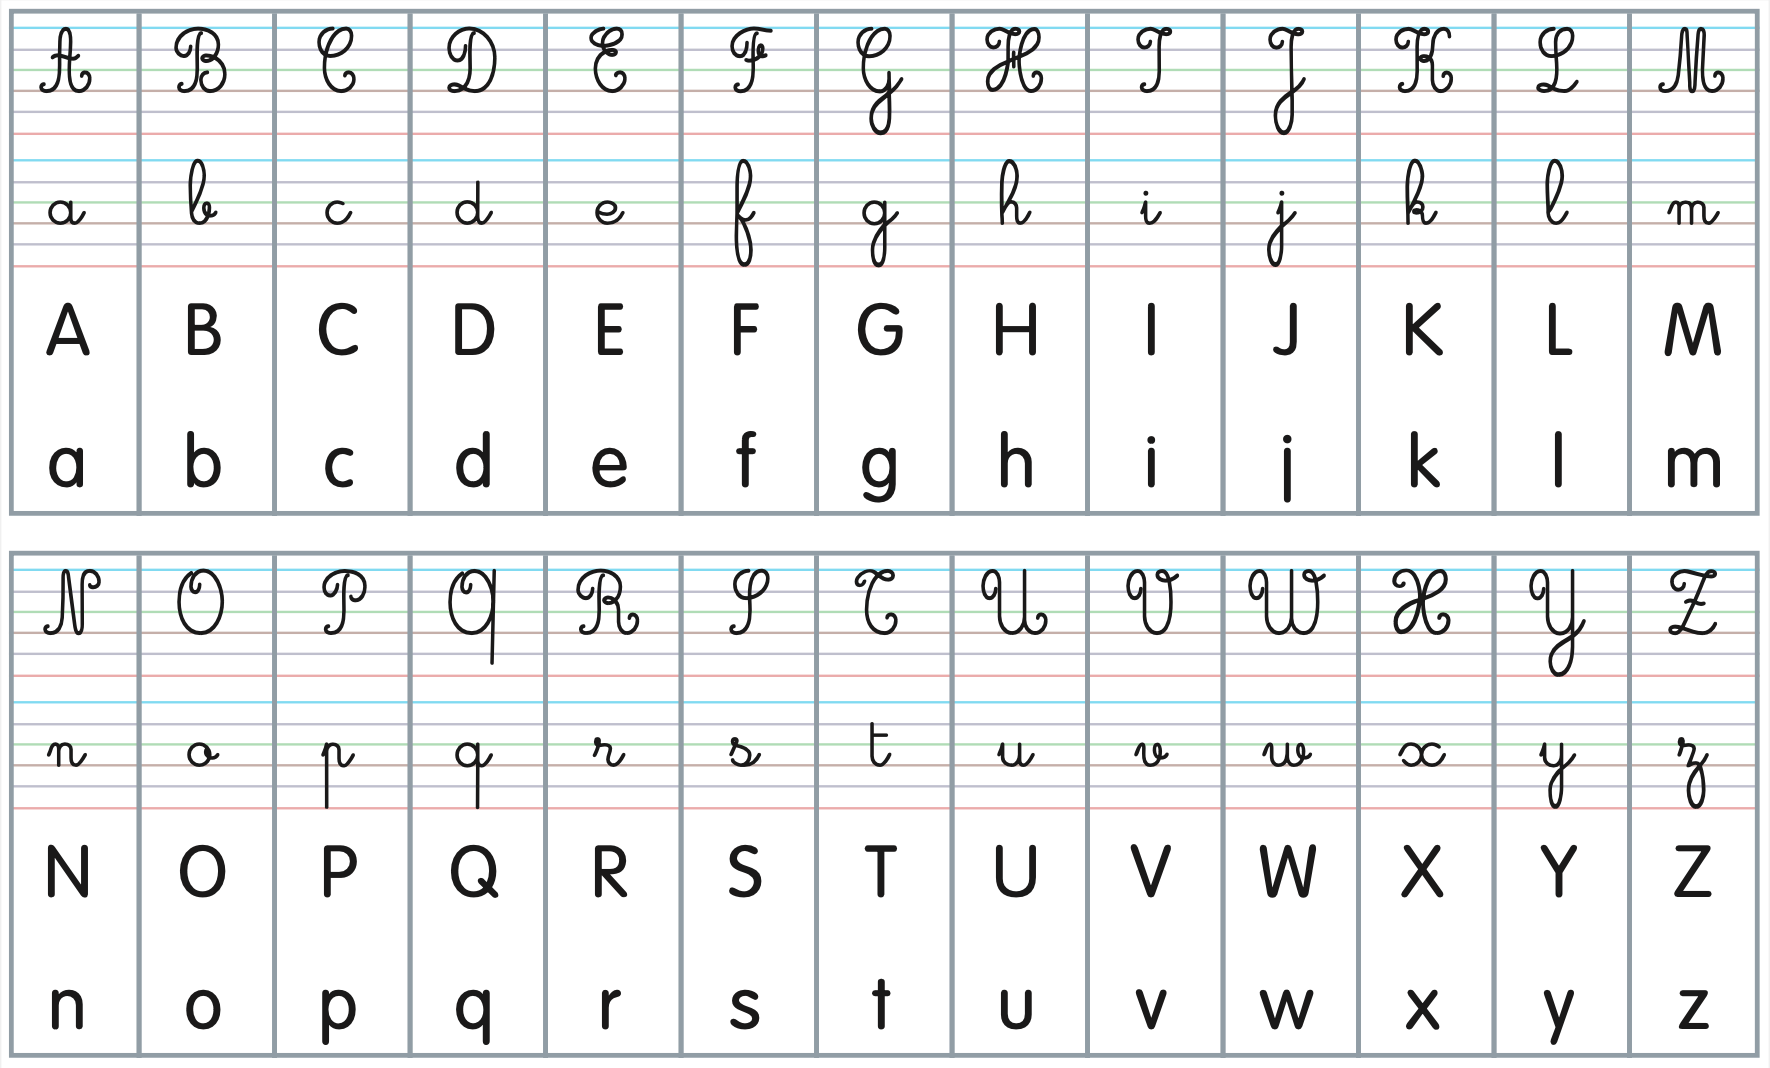 Frise alphabet 4 écritures (cursives et scriptes) - Professeur Chicraôte -  Ma classe coopérative